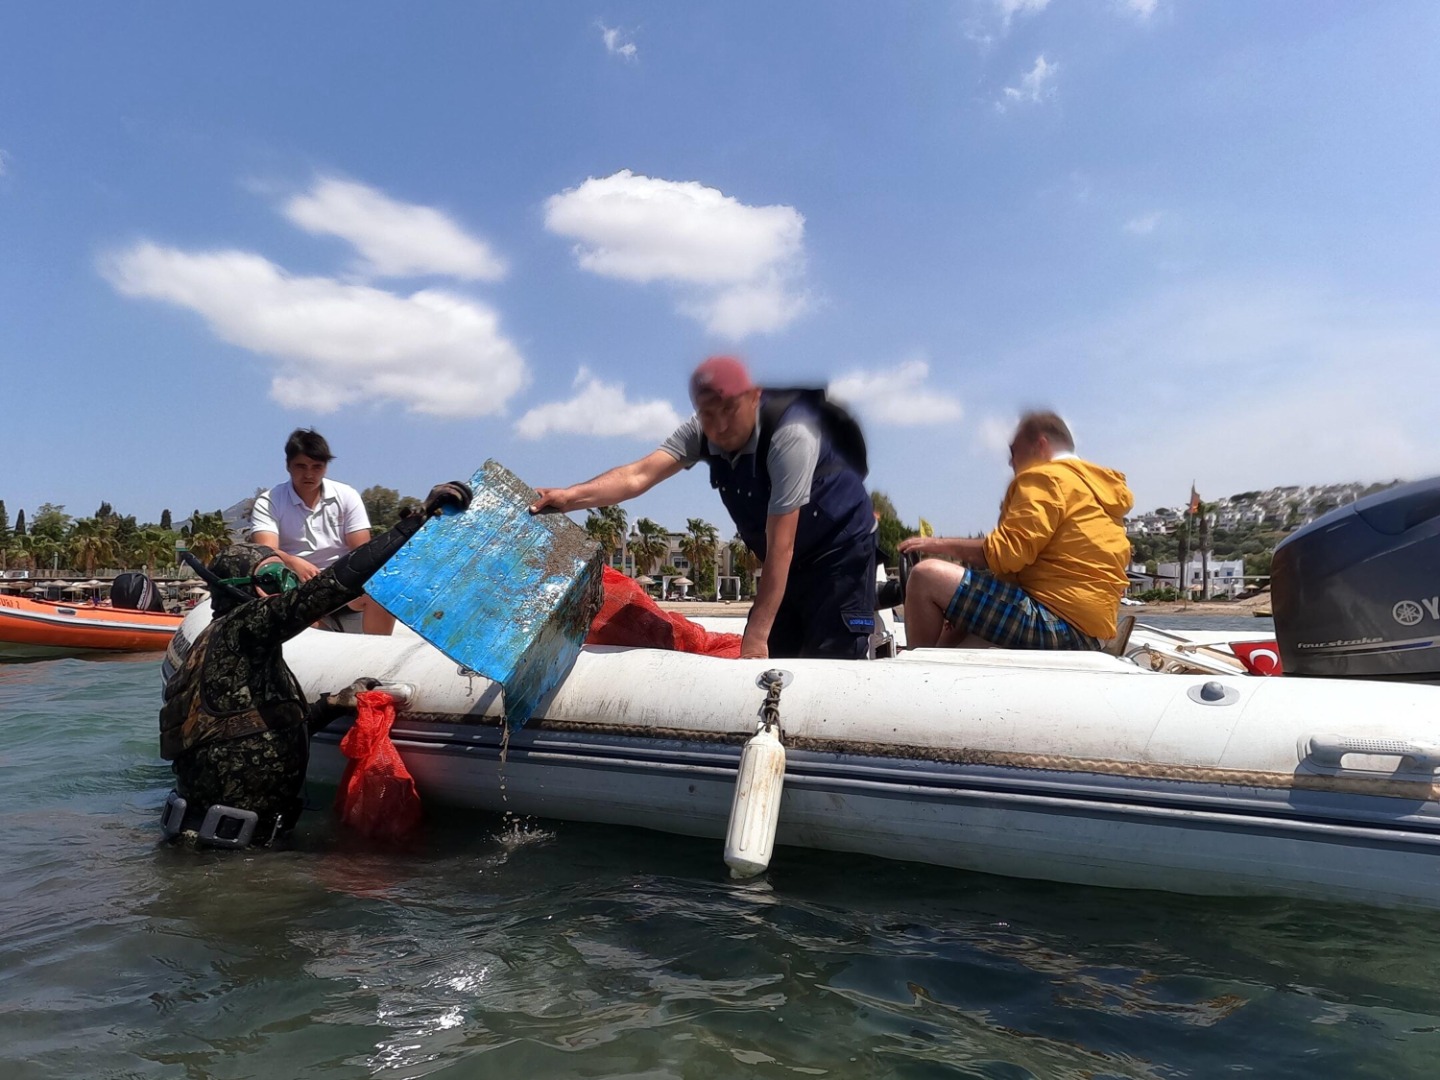 Sahilden geçenler gözlerini alamadı: Denizin dibine daldılar 342 kilo çıkardılar 9